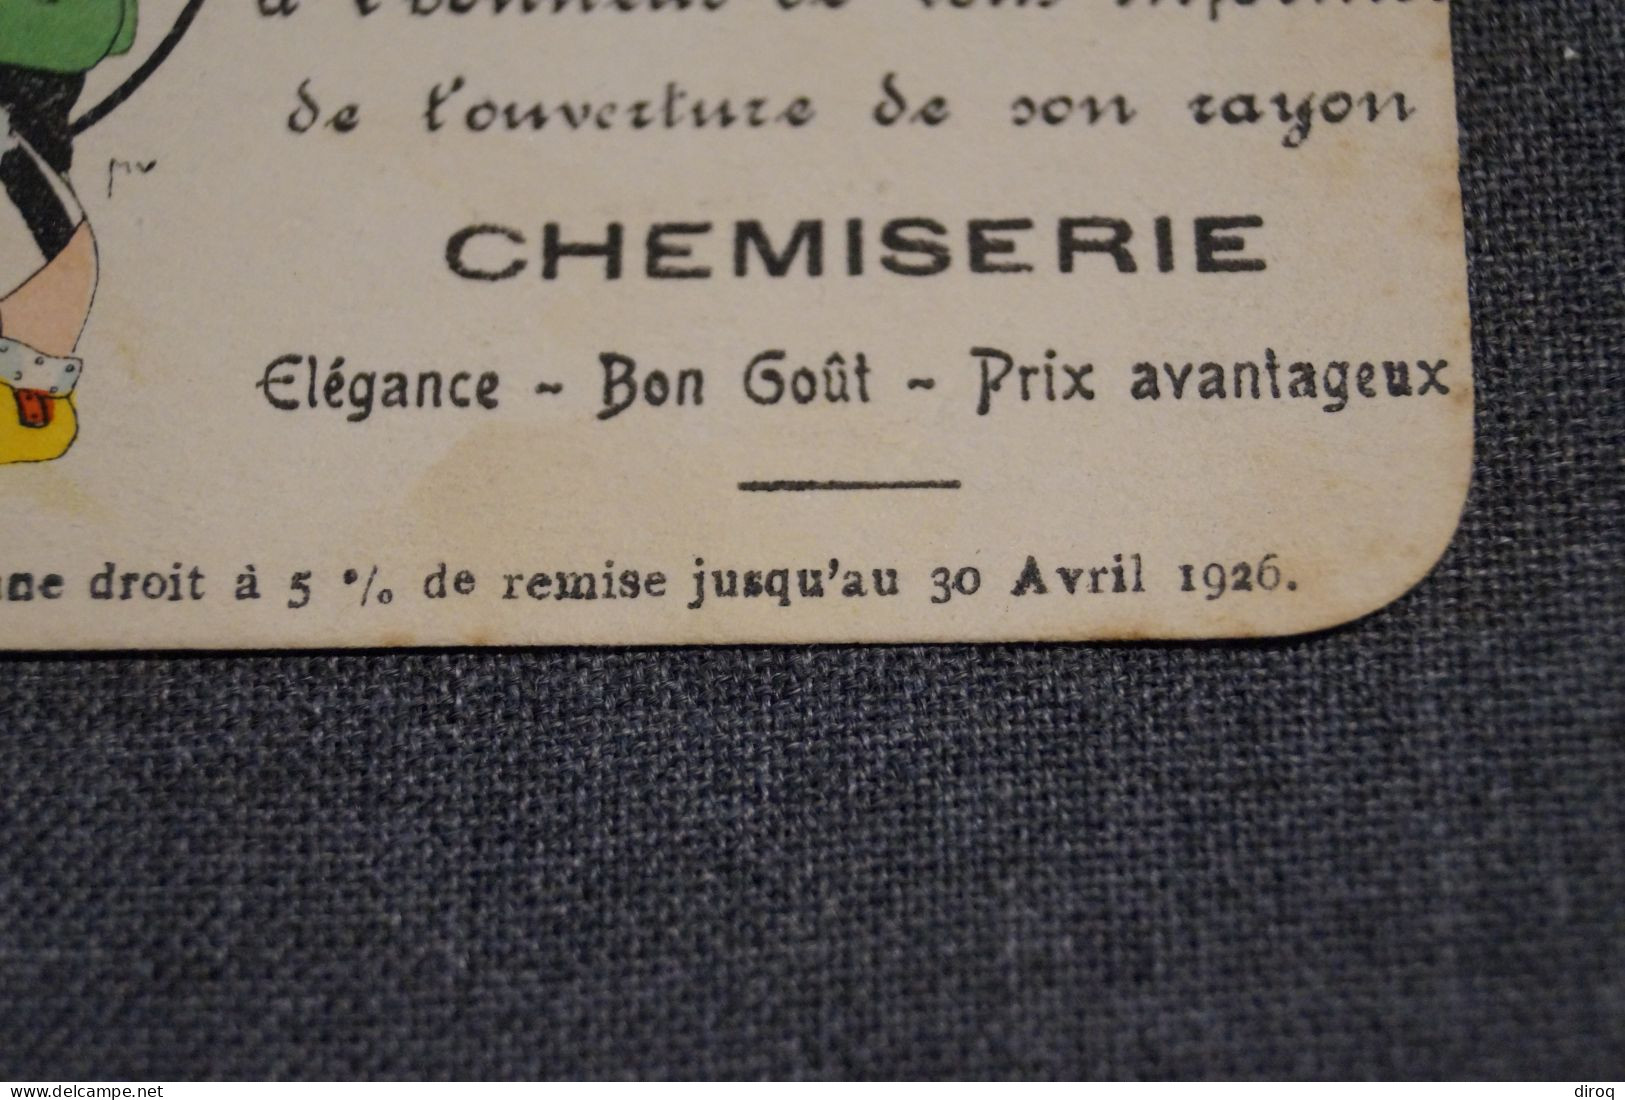 Belle Ancienne Carte Publicitaire 1926,La Bonneterie E. Lefebvre, 9,5 Cm. Sur 5,5 Cm. - Publicités